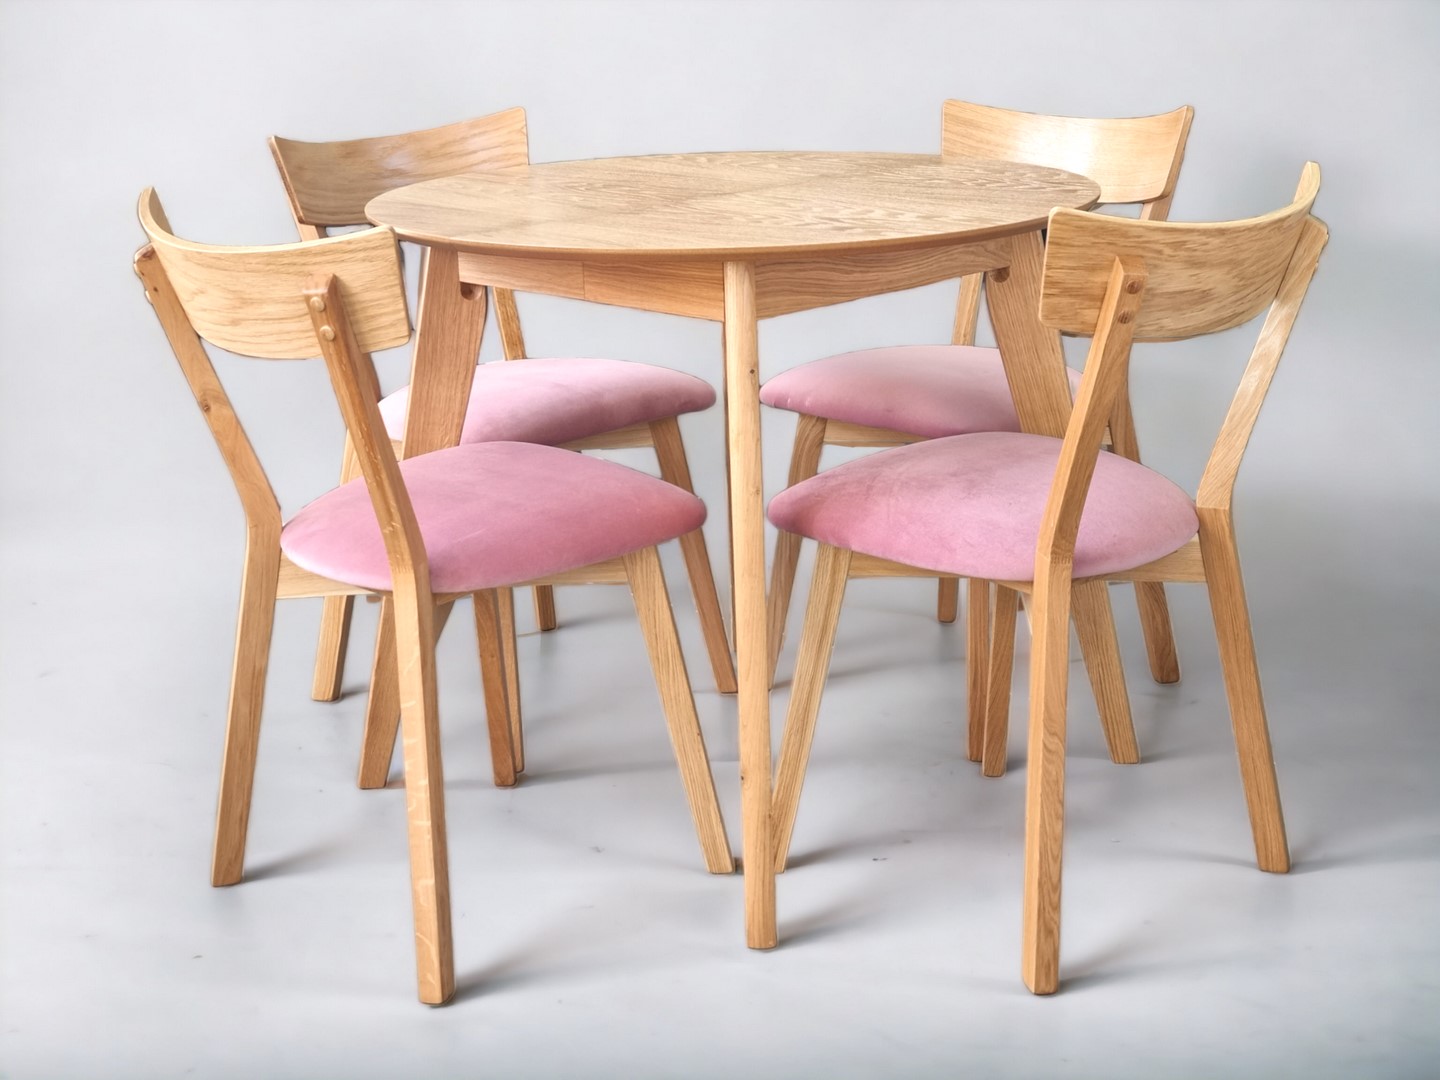 Zestaw stół dębowy okrągły drewniany Sandro krzesła dębowe Erik